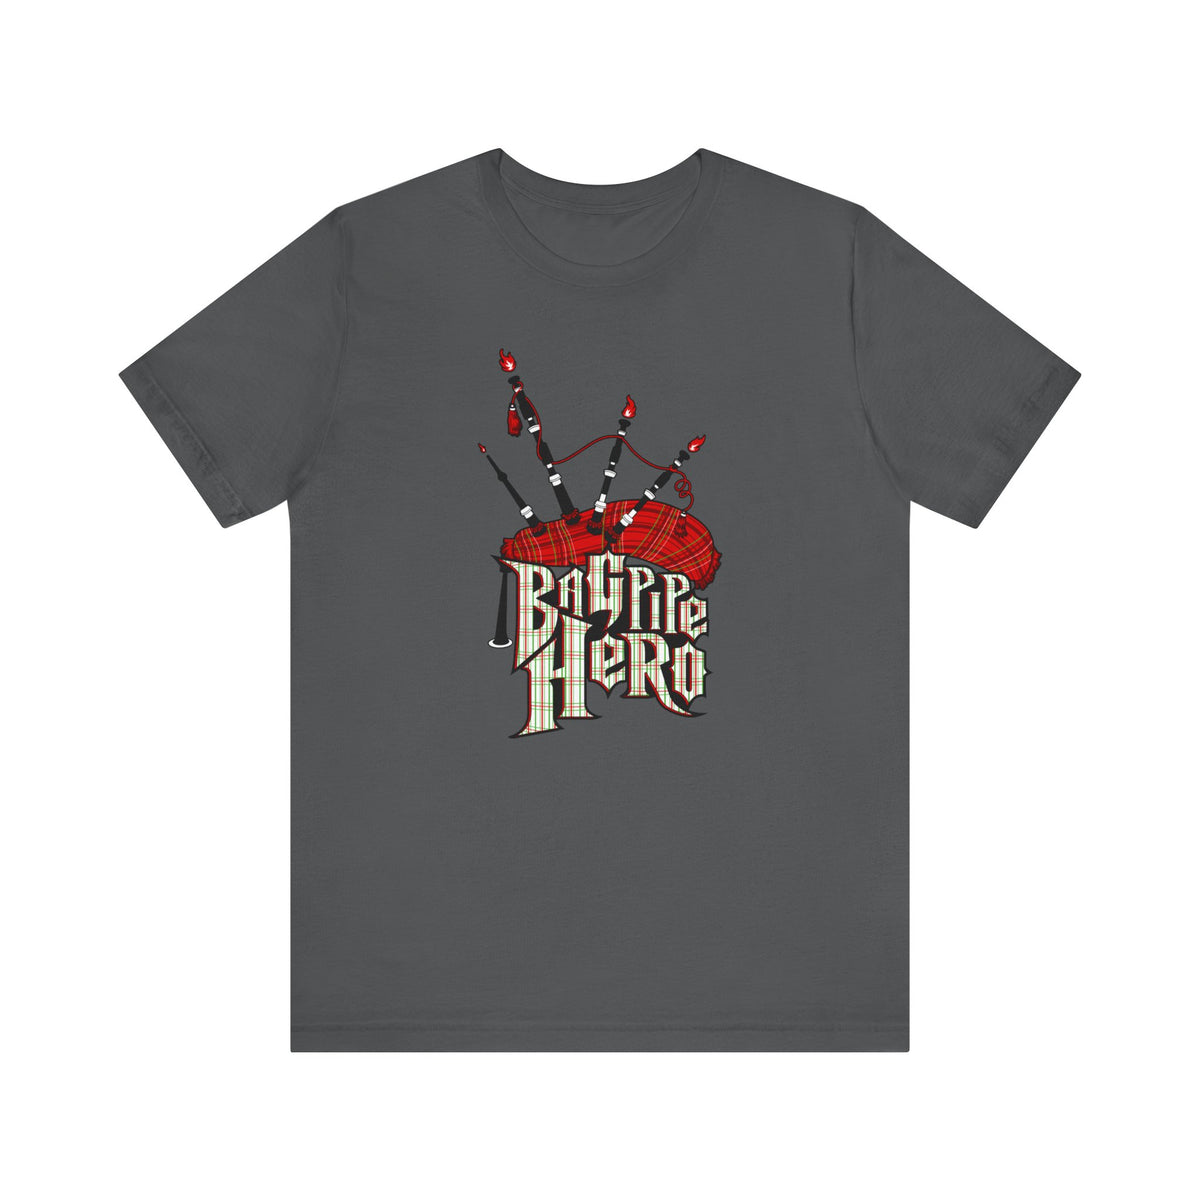 Bagpipe Hero - Men's T-Shirt